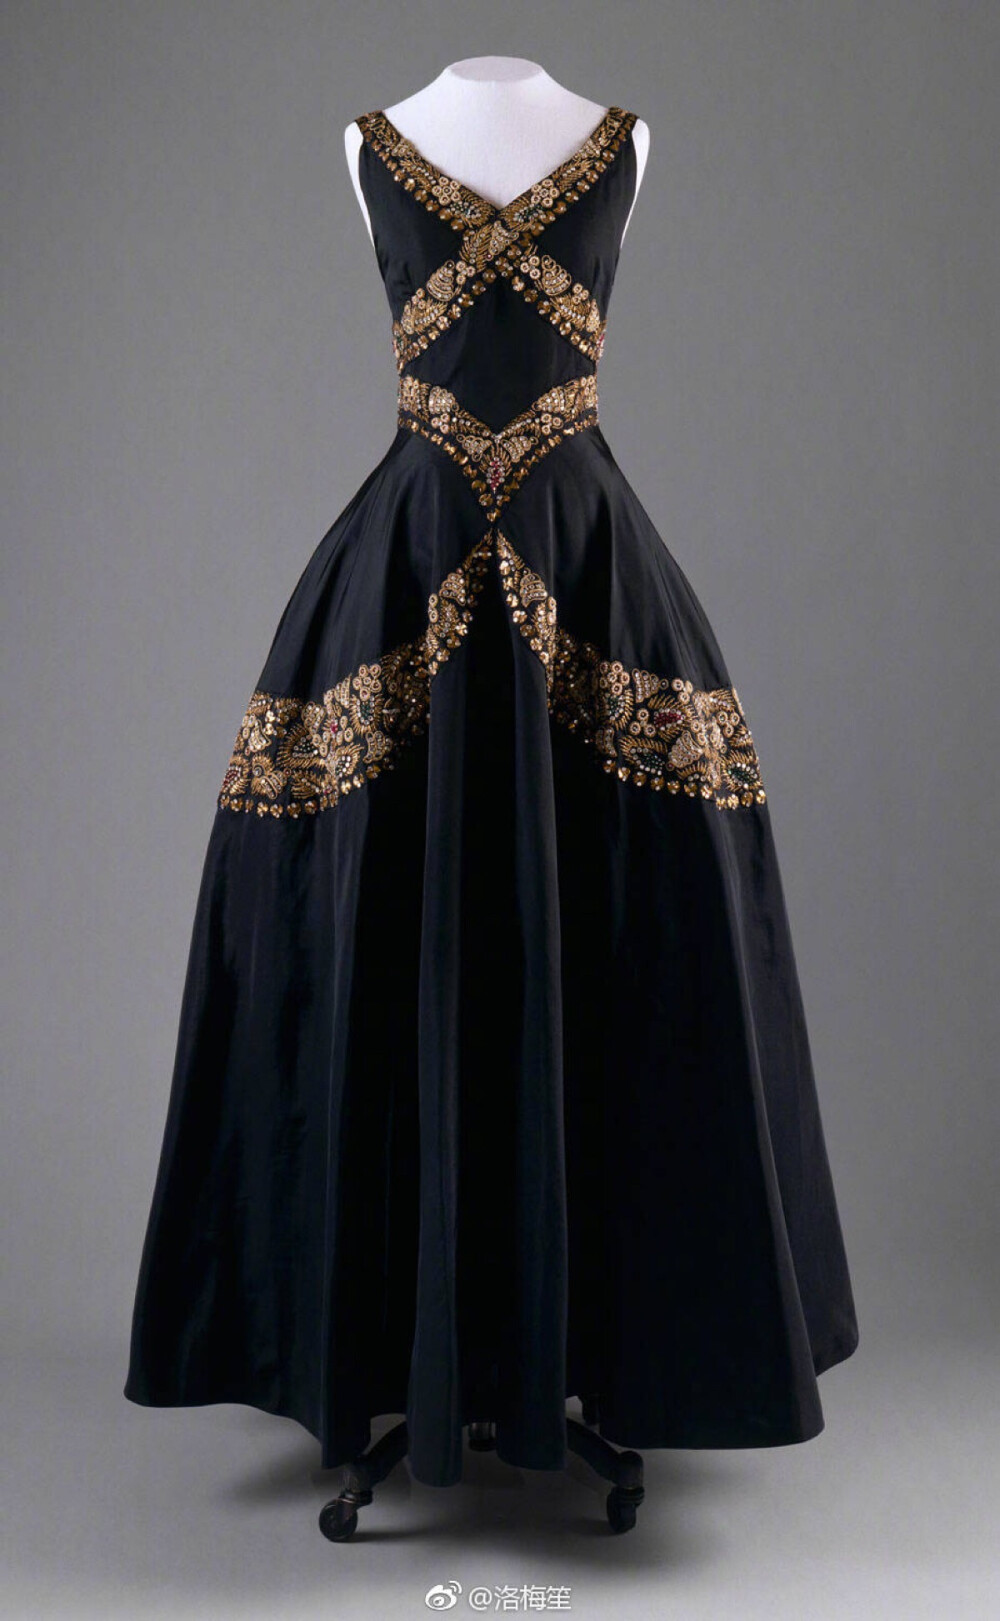 1938年Mainbocher的一件黑色晚礼服